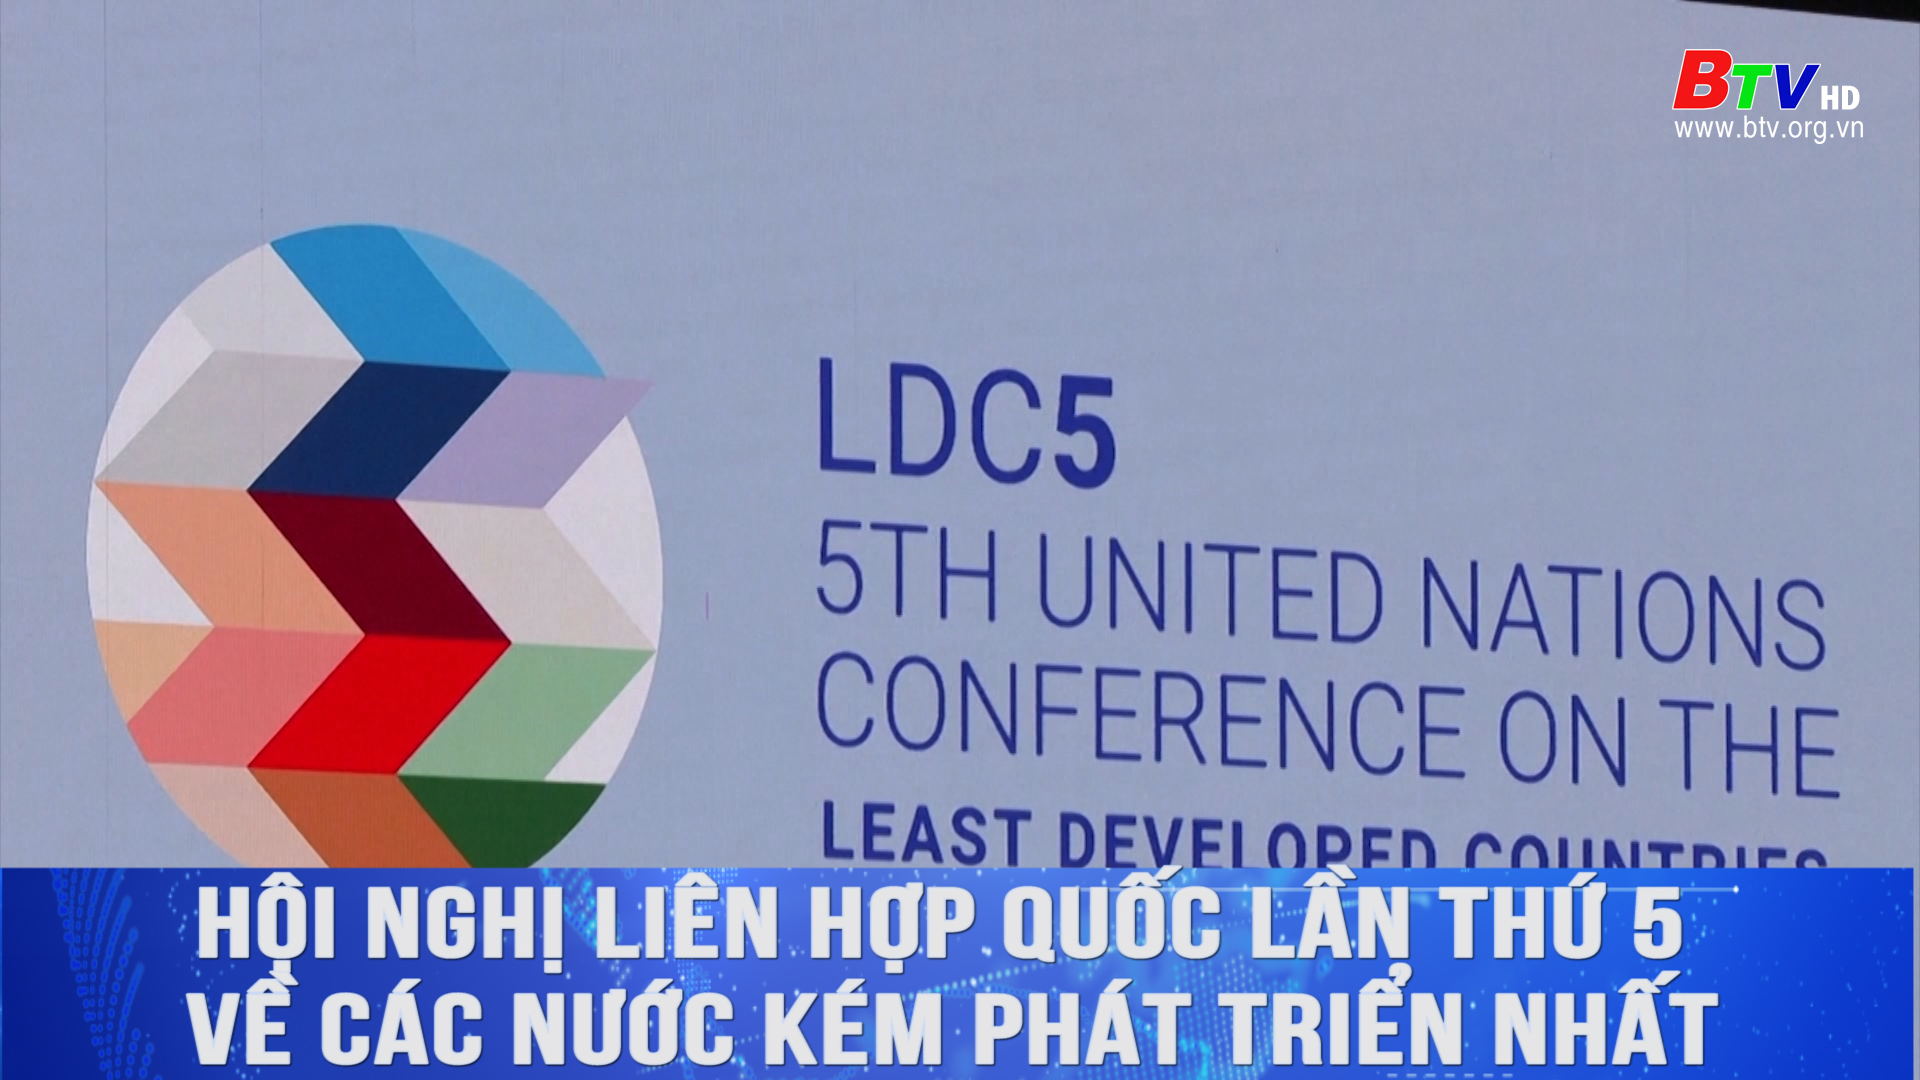 Hội nghị Liên hợp quốc lần thứ 5 về các nước kém phát triển nhất